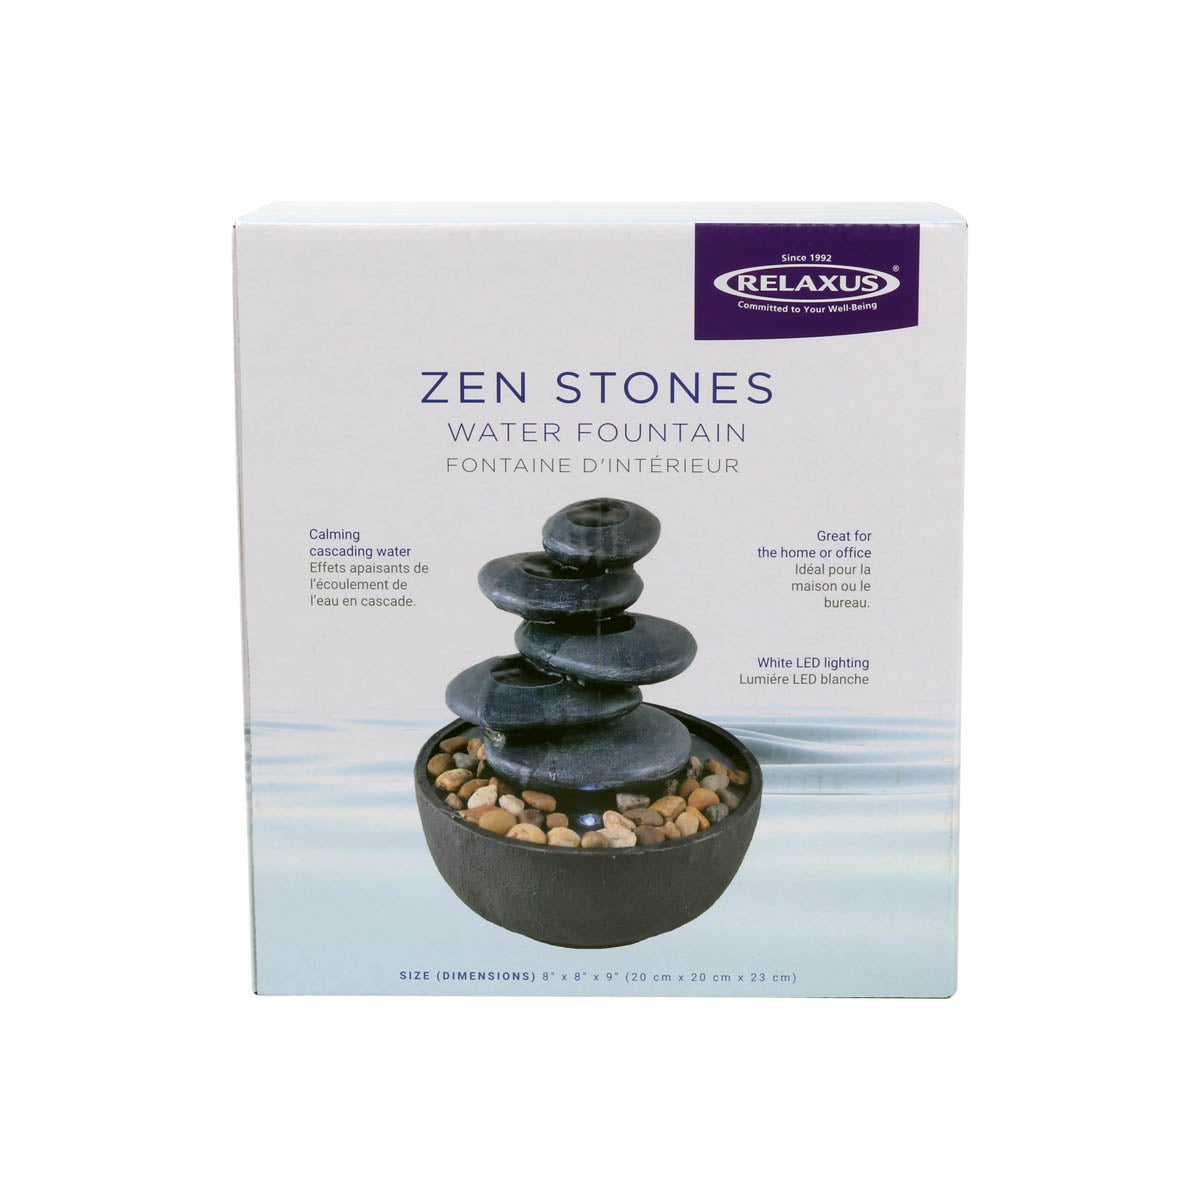 Zen Stones Indoor Water Fountain box